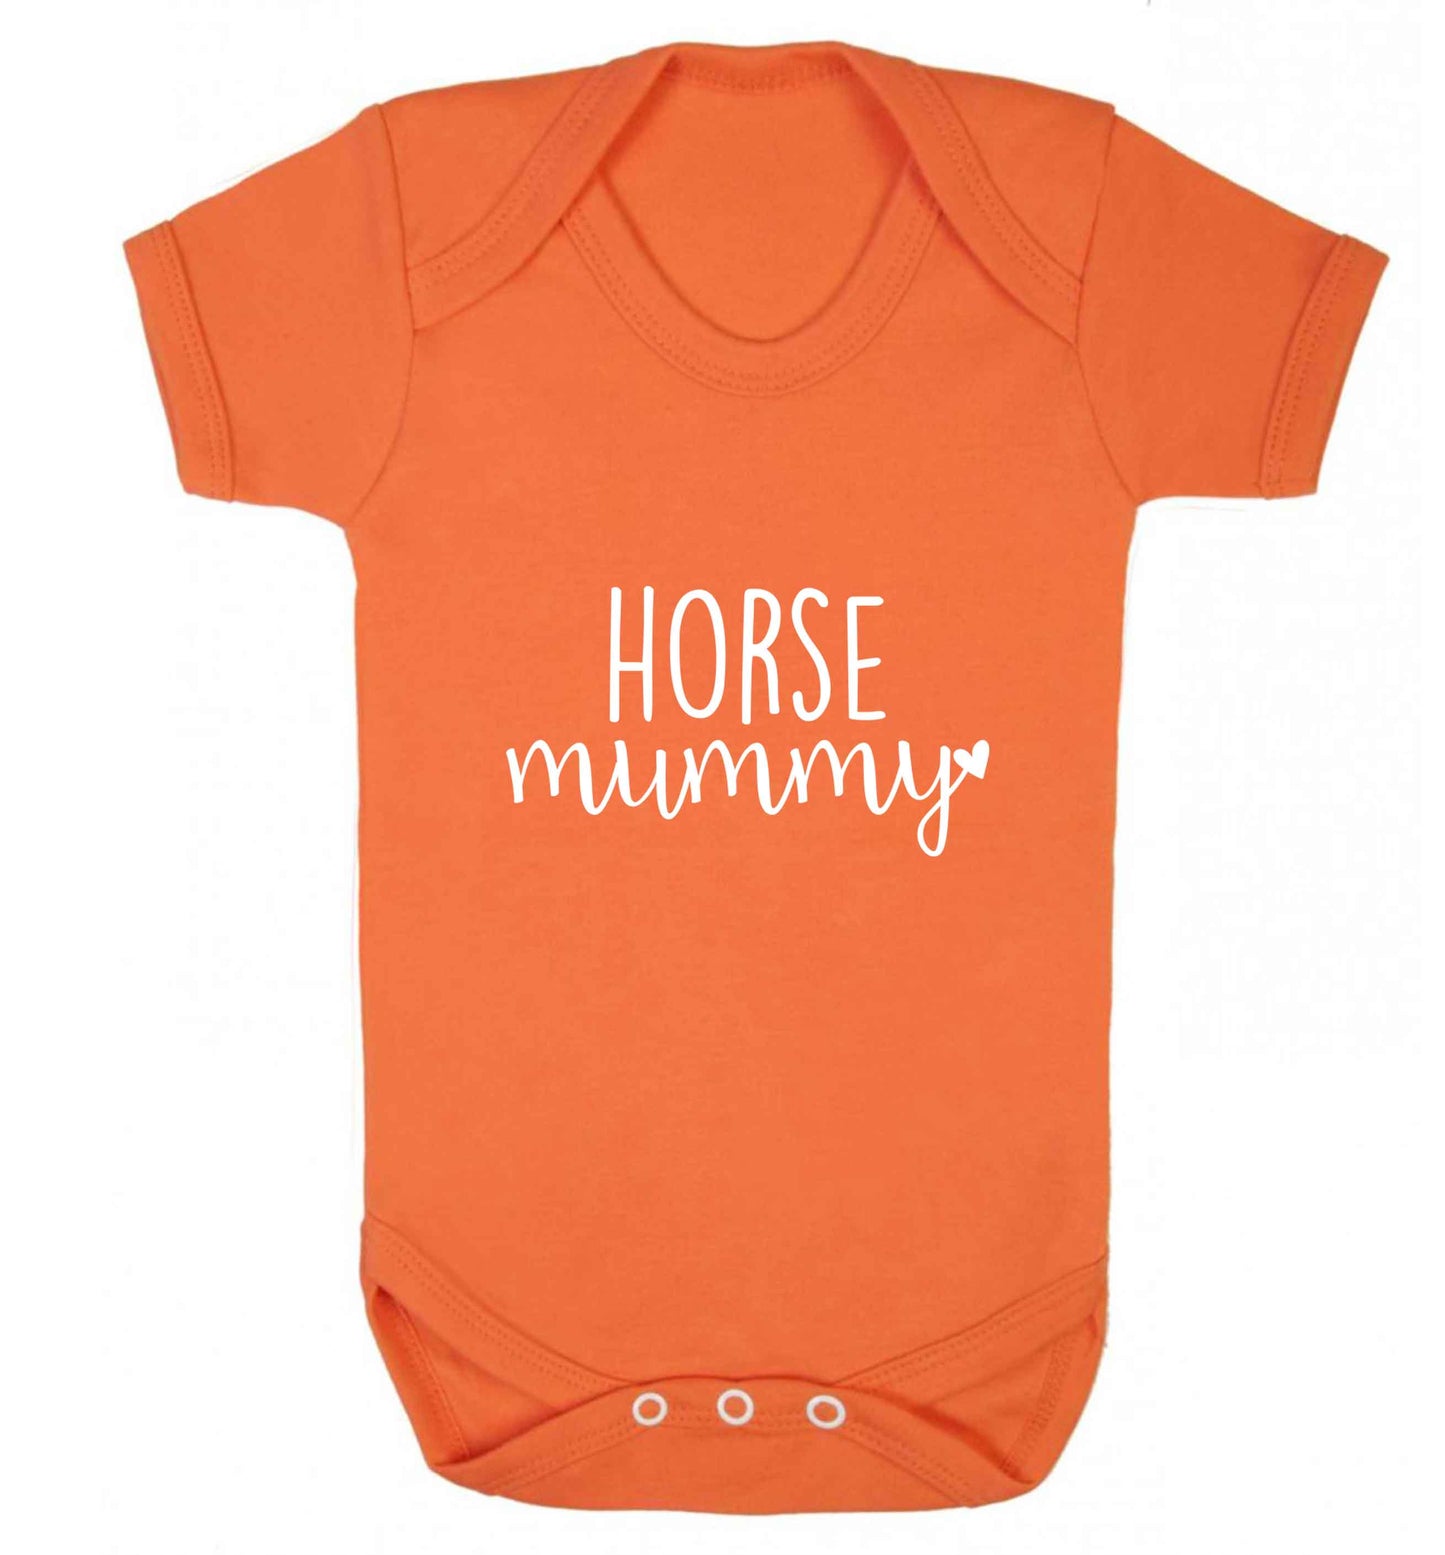 Horse mummy baby vest orange 18-24 months